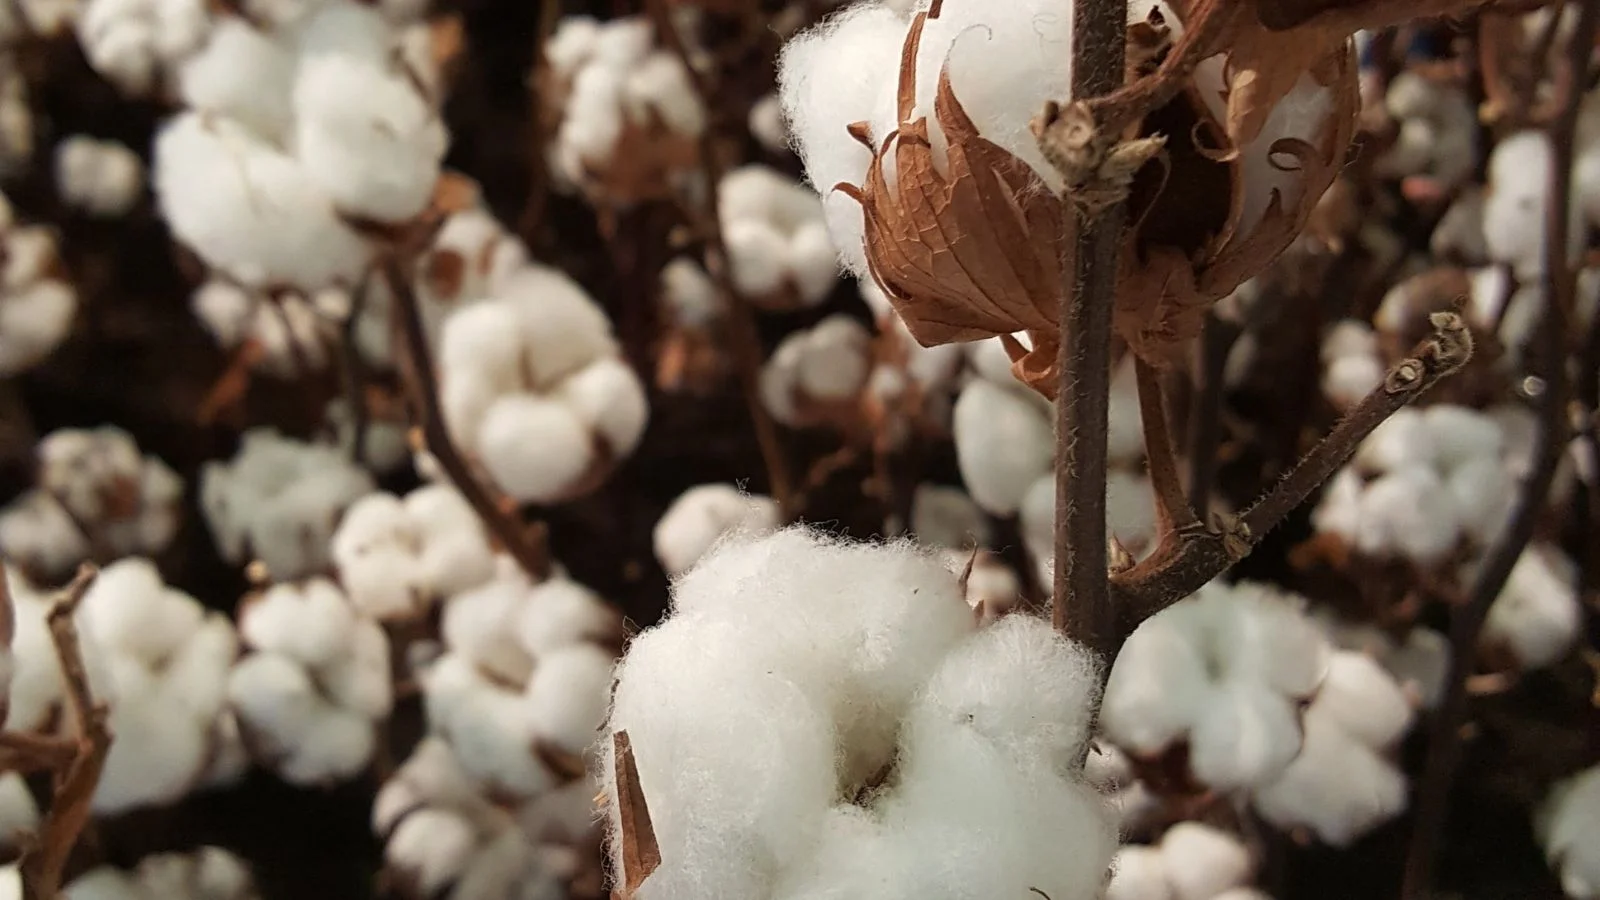 Qué es el algodón orgánico?